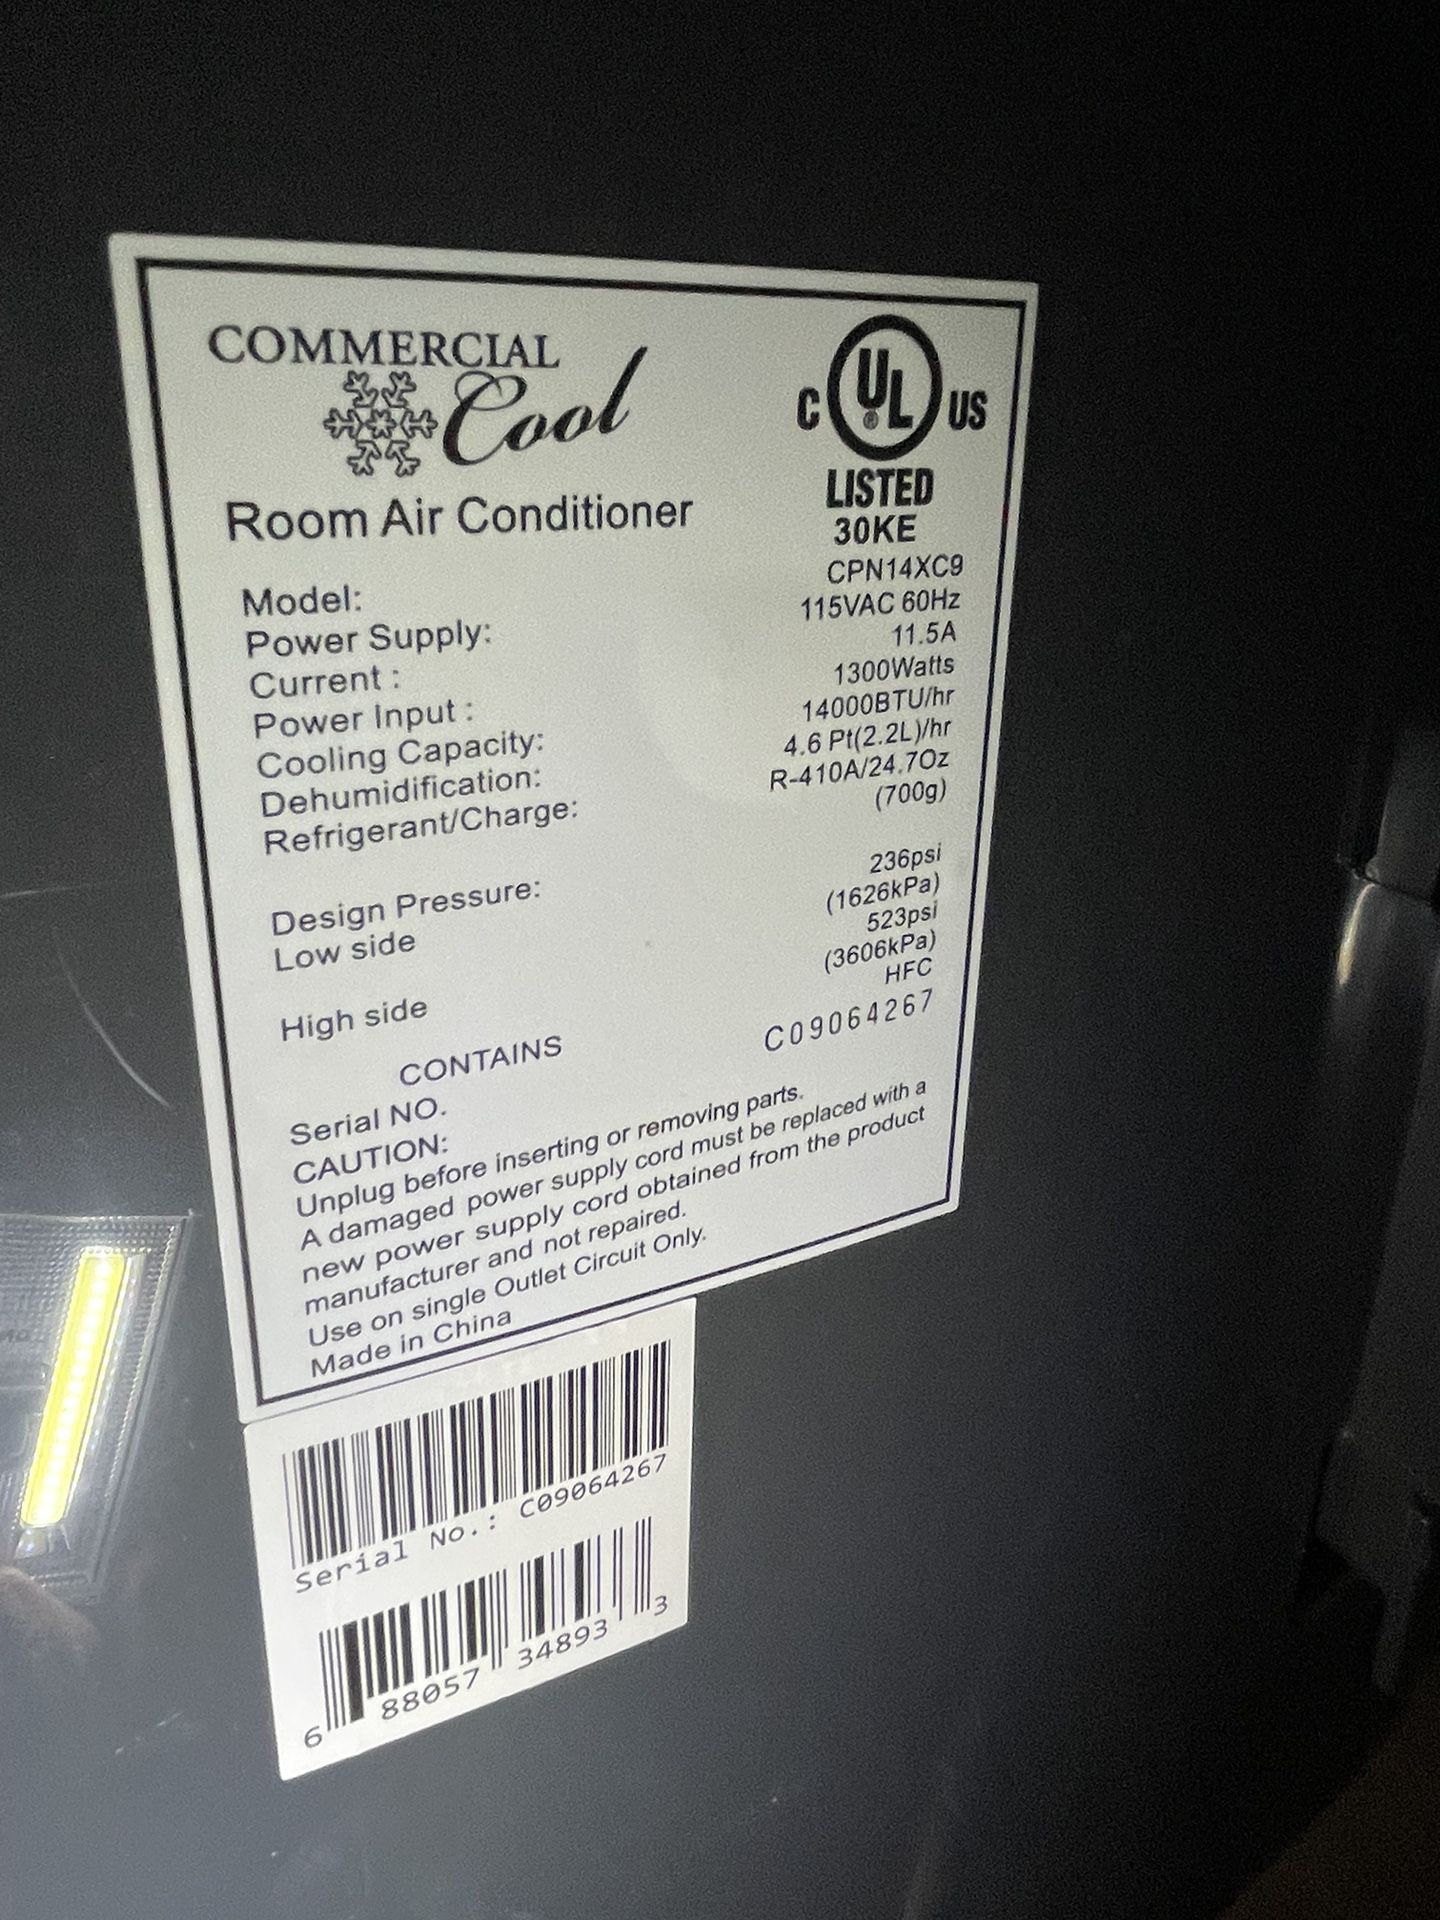 Air Conditioner - Portable